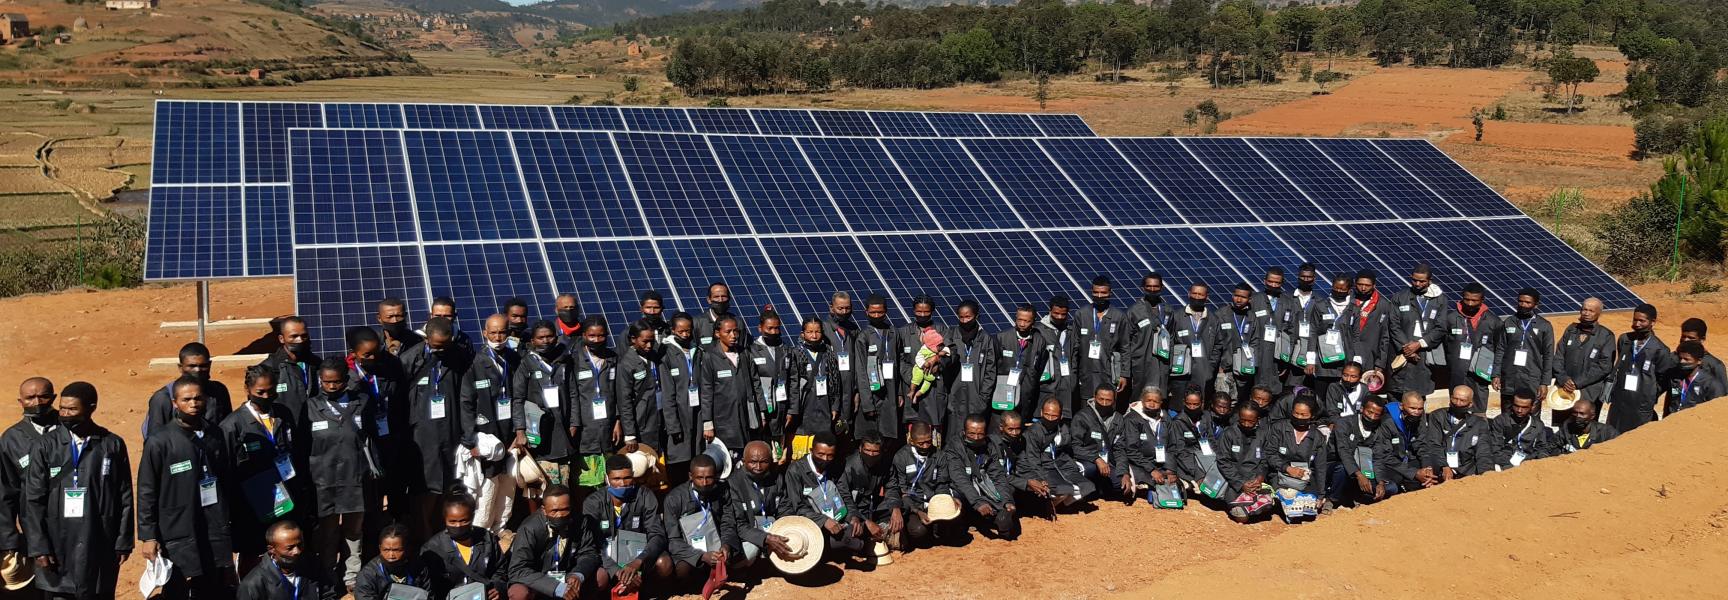 Des panneaux solaires à Madagascar